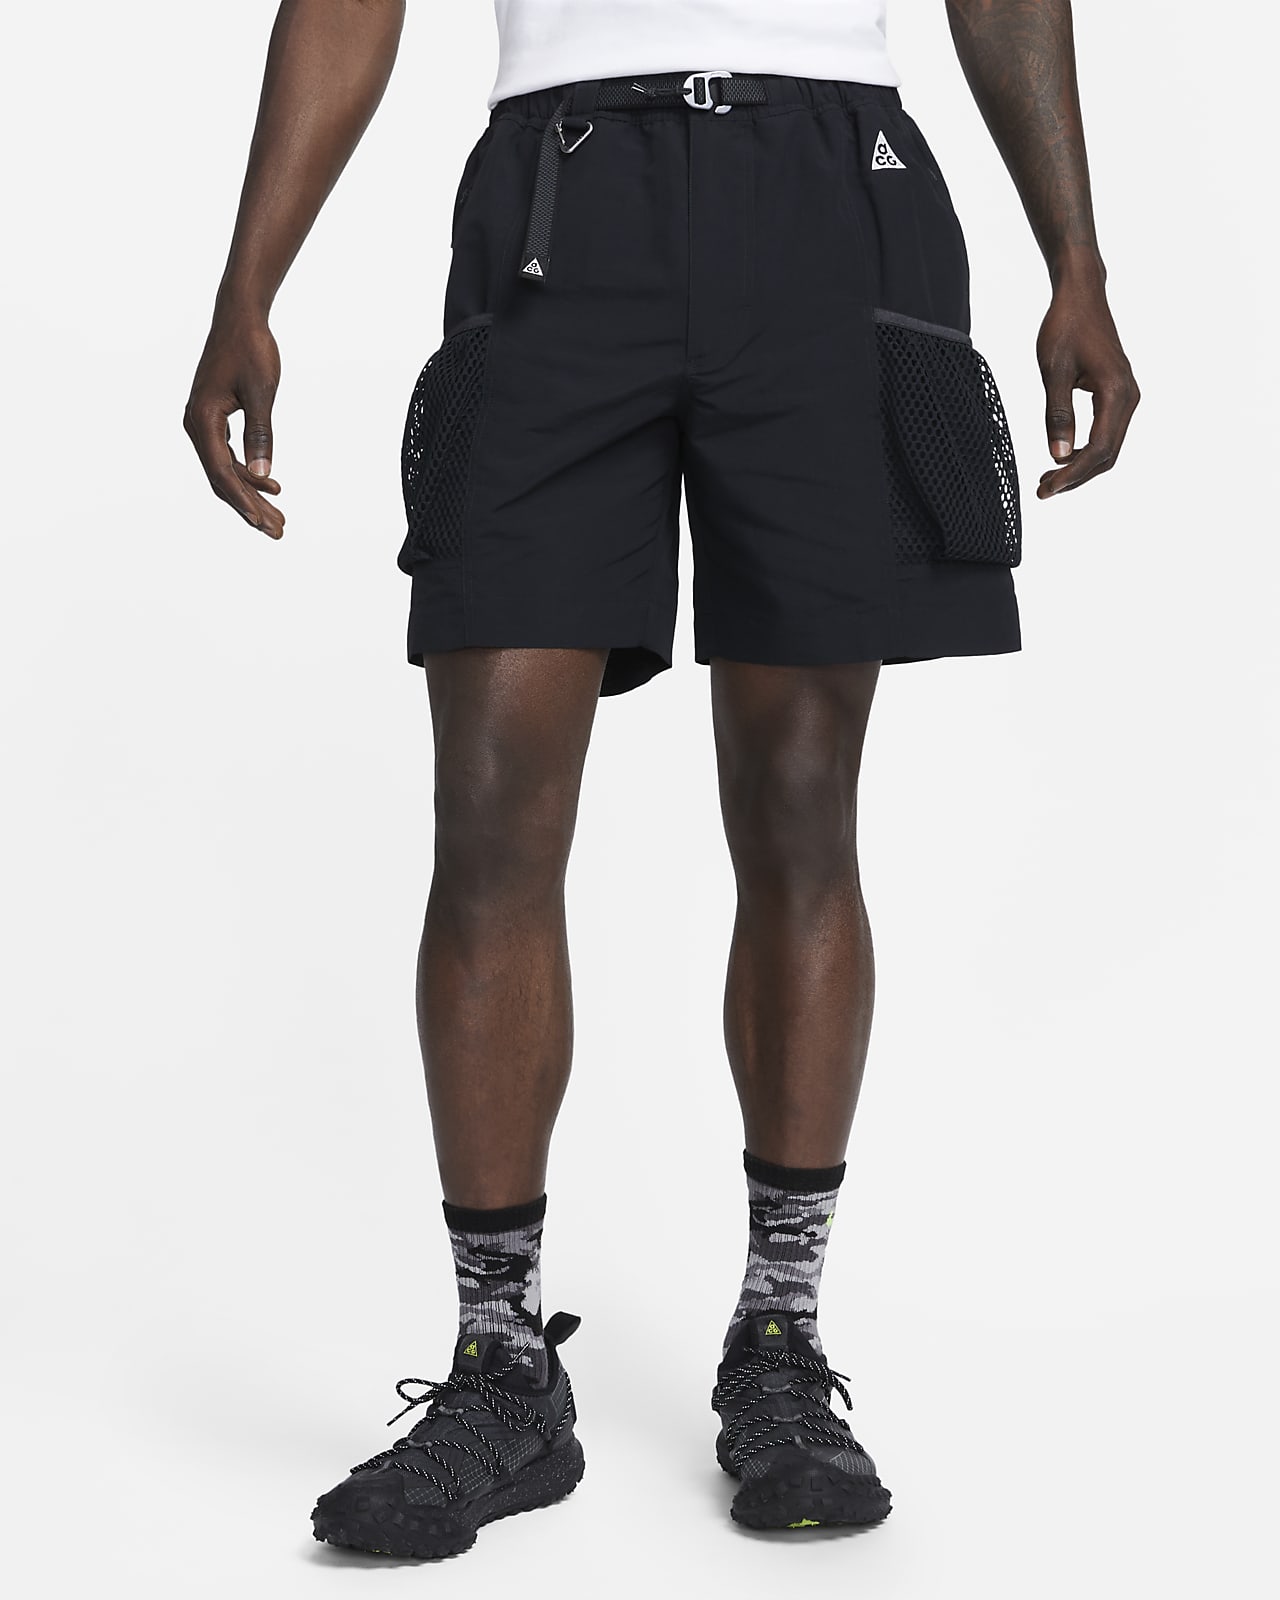 ACG "Snowgrass" Men's Shorts. Nike.com